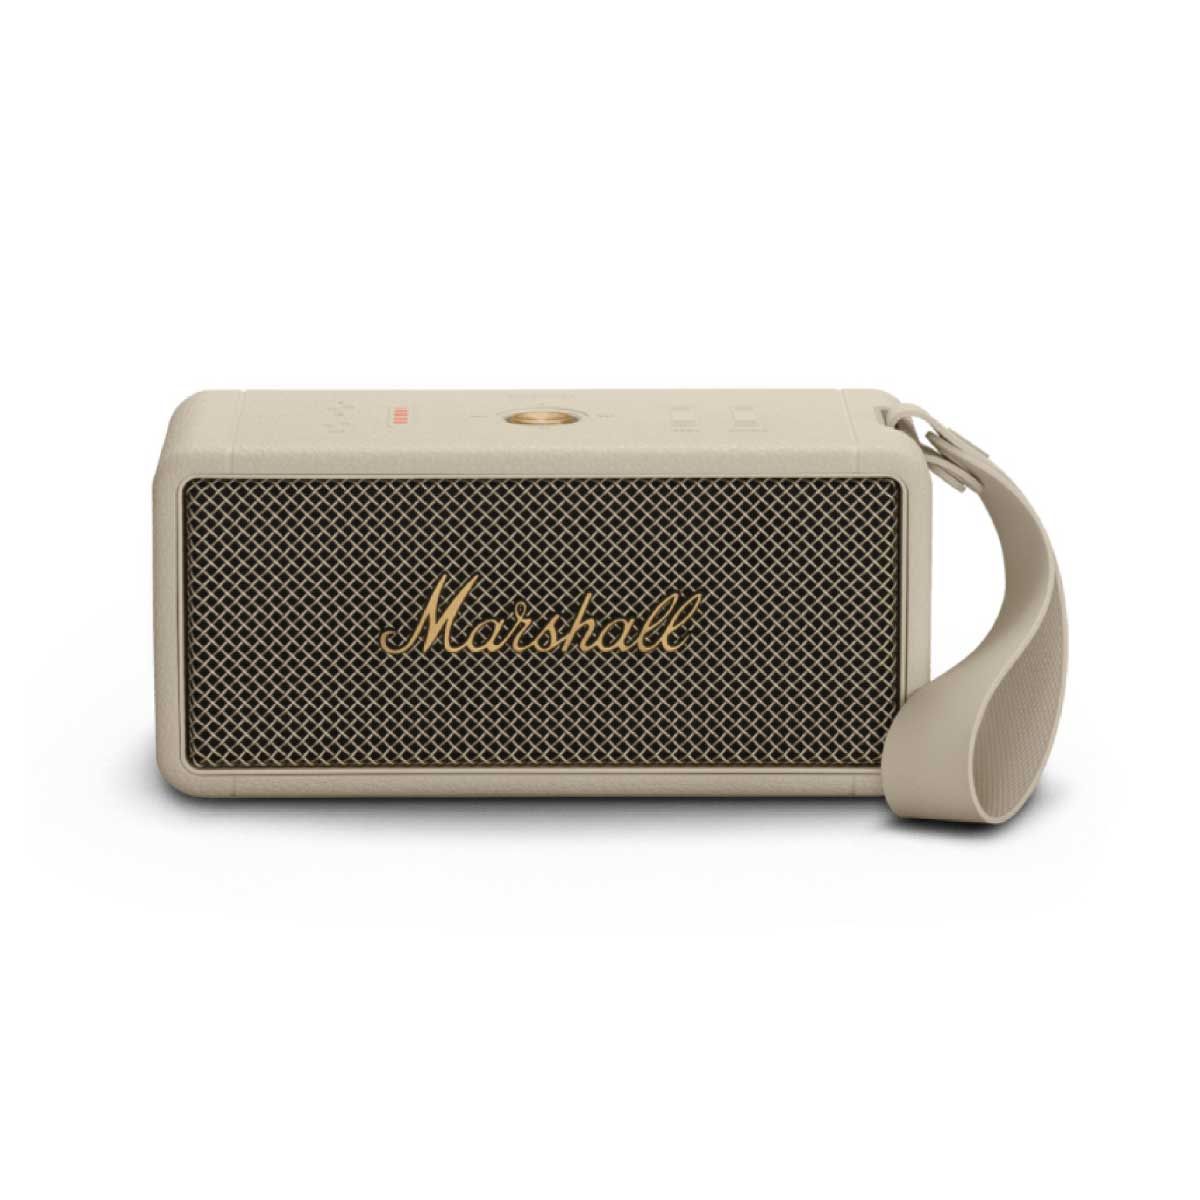 MARSHALL  ลำโพงไร้สาย Bluetooth Speaker รุ่น Middleton  Bluetooth Speaker